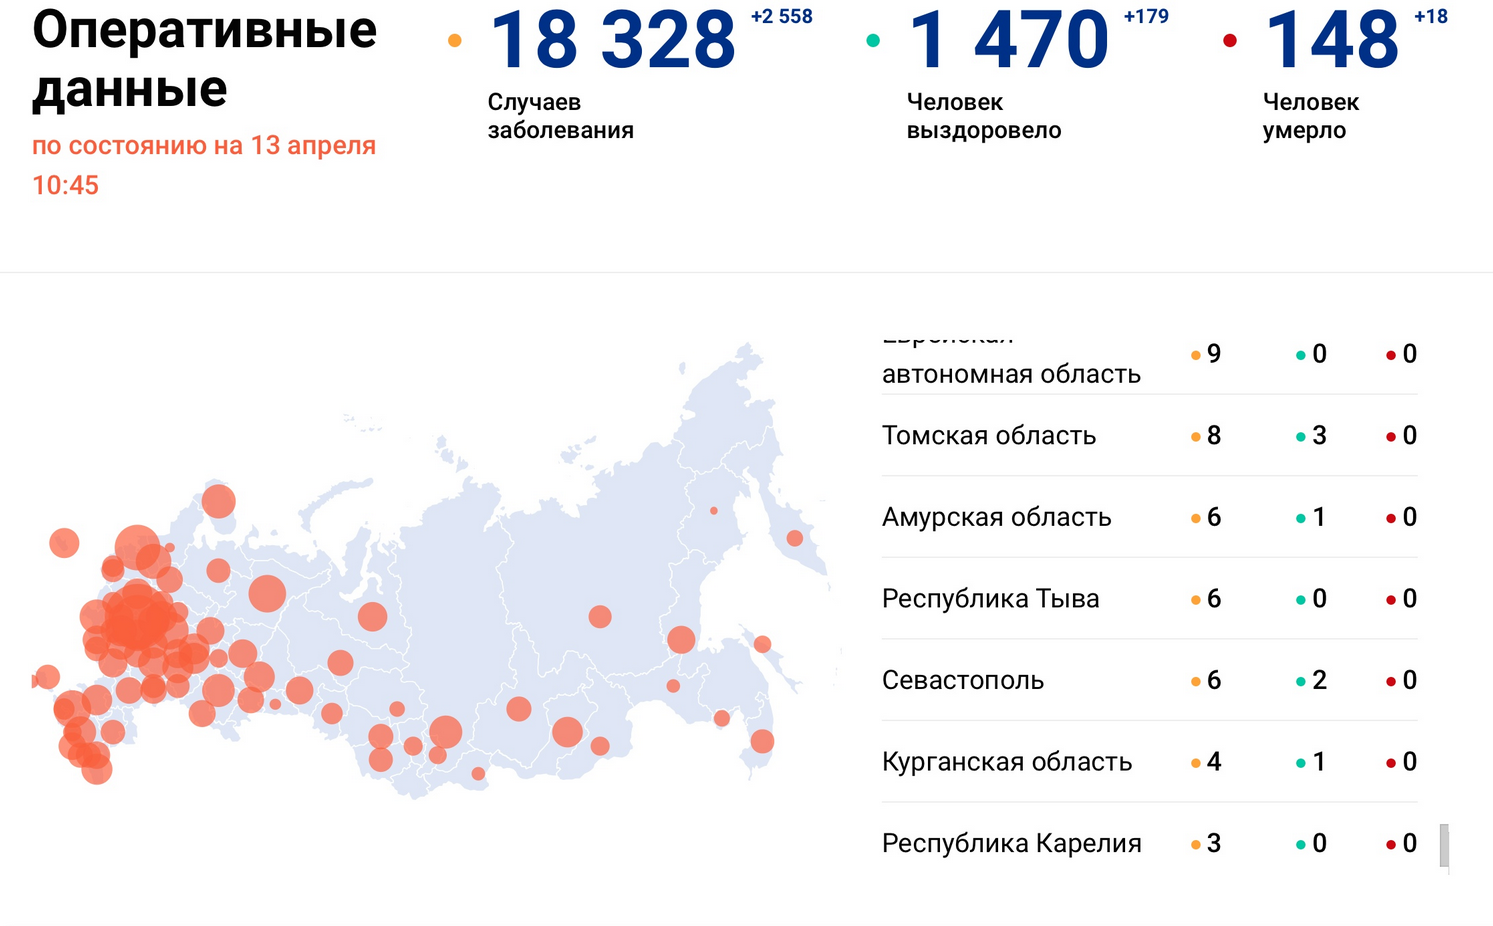 Сколько человек умирает в год в москве. Эпидемиологическая ситуация в России. Статистика коронавируса в России. Заболеваемость коронавирусом в России. Коронавирус статистика за 2020.